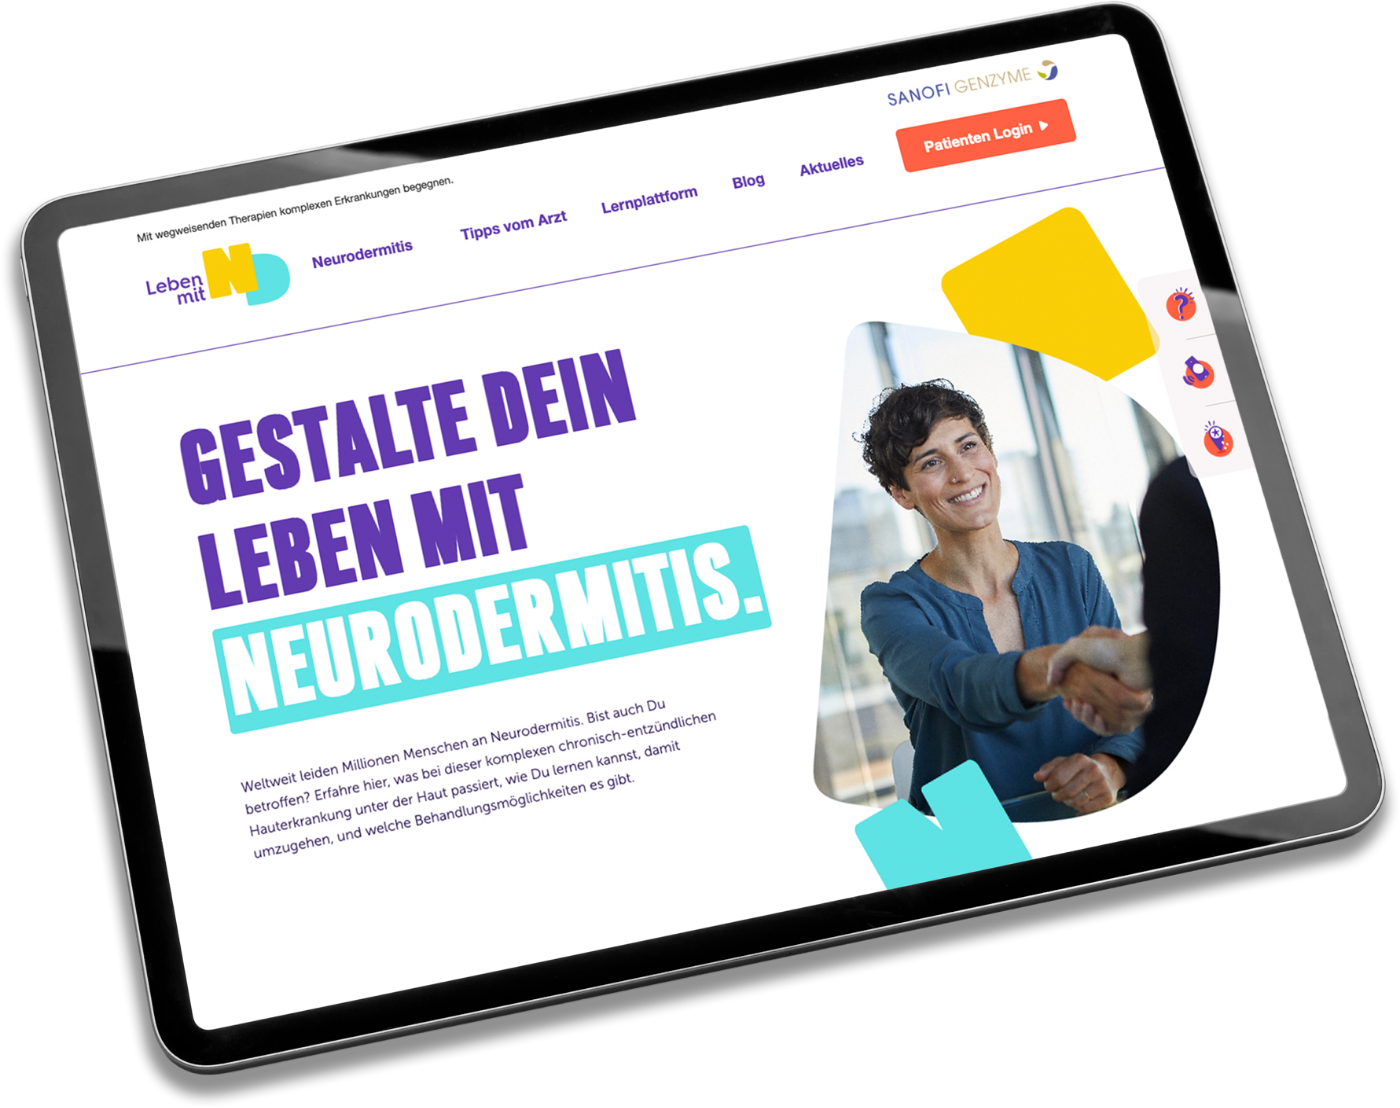 havas-life-bird-und-schulte-credentials-neurodermitis-2.png